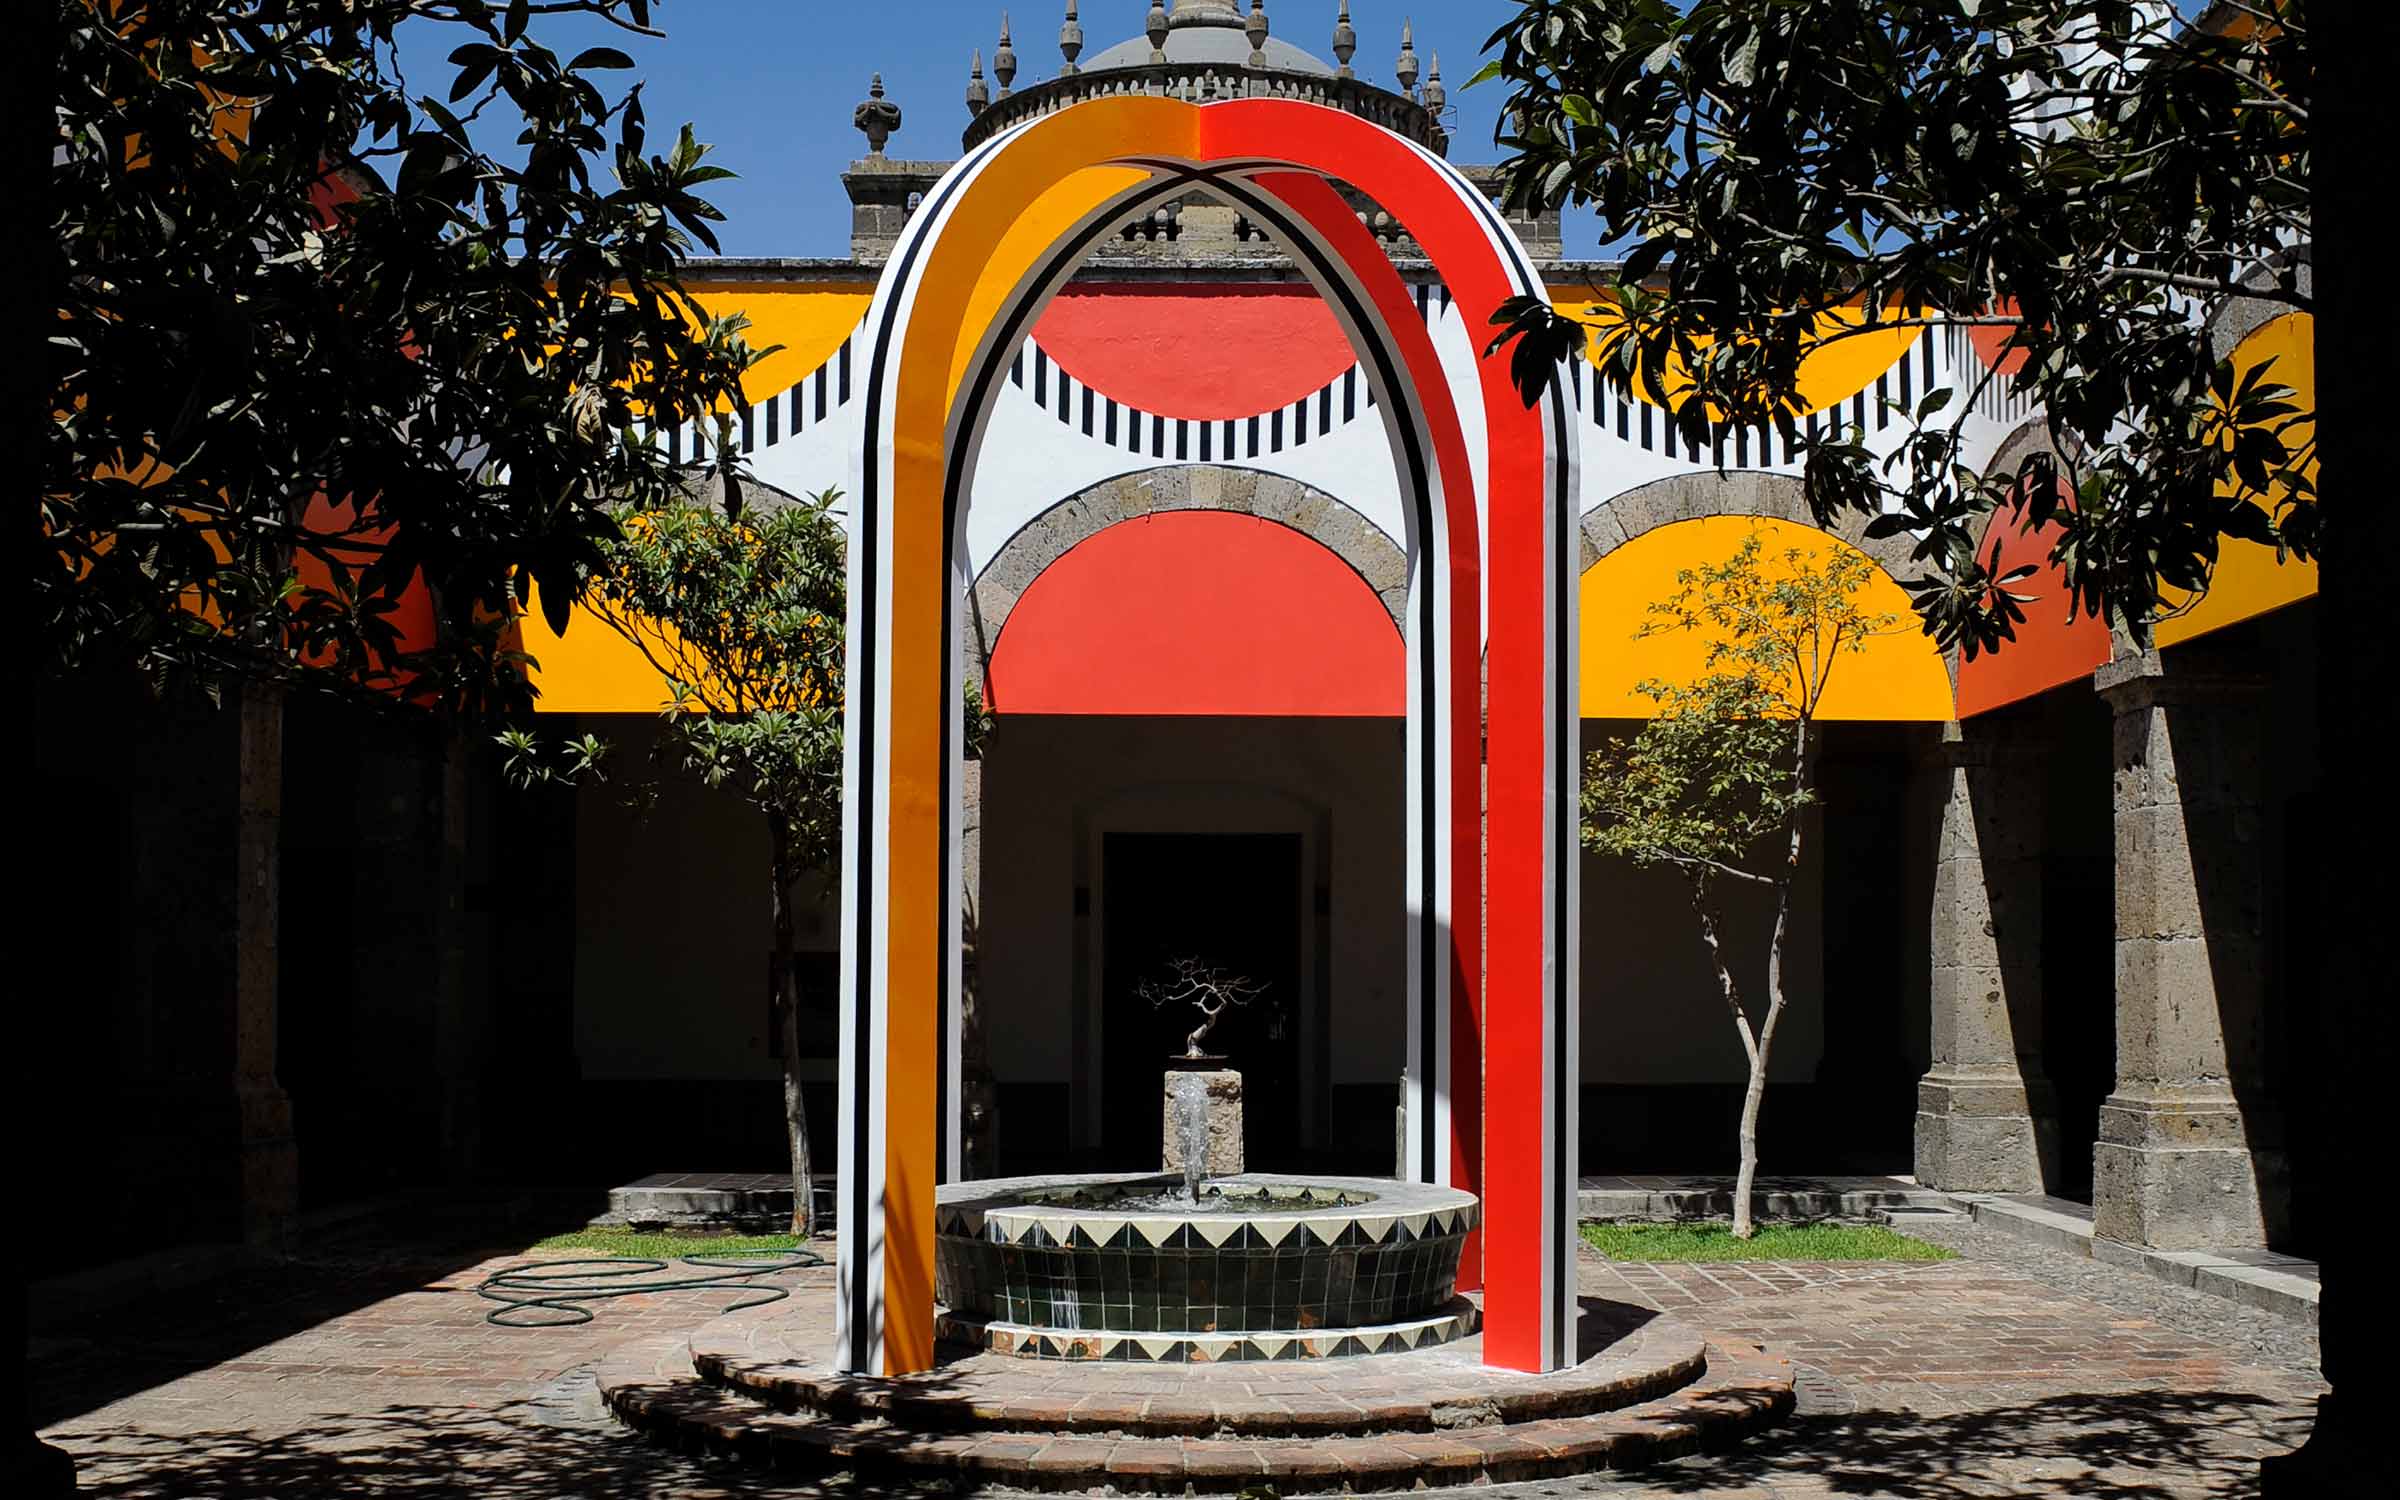 Daniel Buren La fuente a los arcos para un doble friso, travail in situ, Hospicio Cabañas, Guadalajara (Mexique), 2014. Détail. ©DB-ADAGP Paris